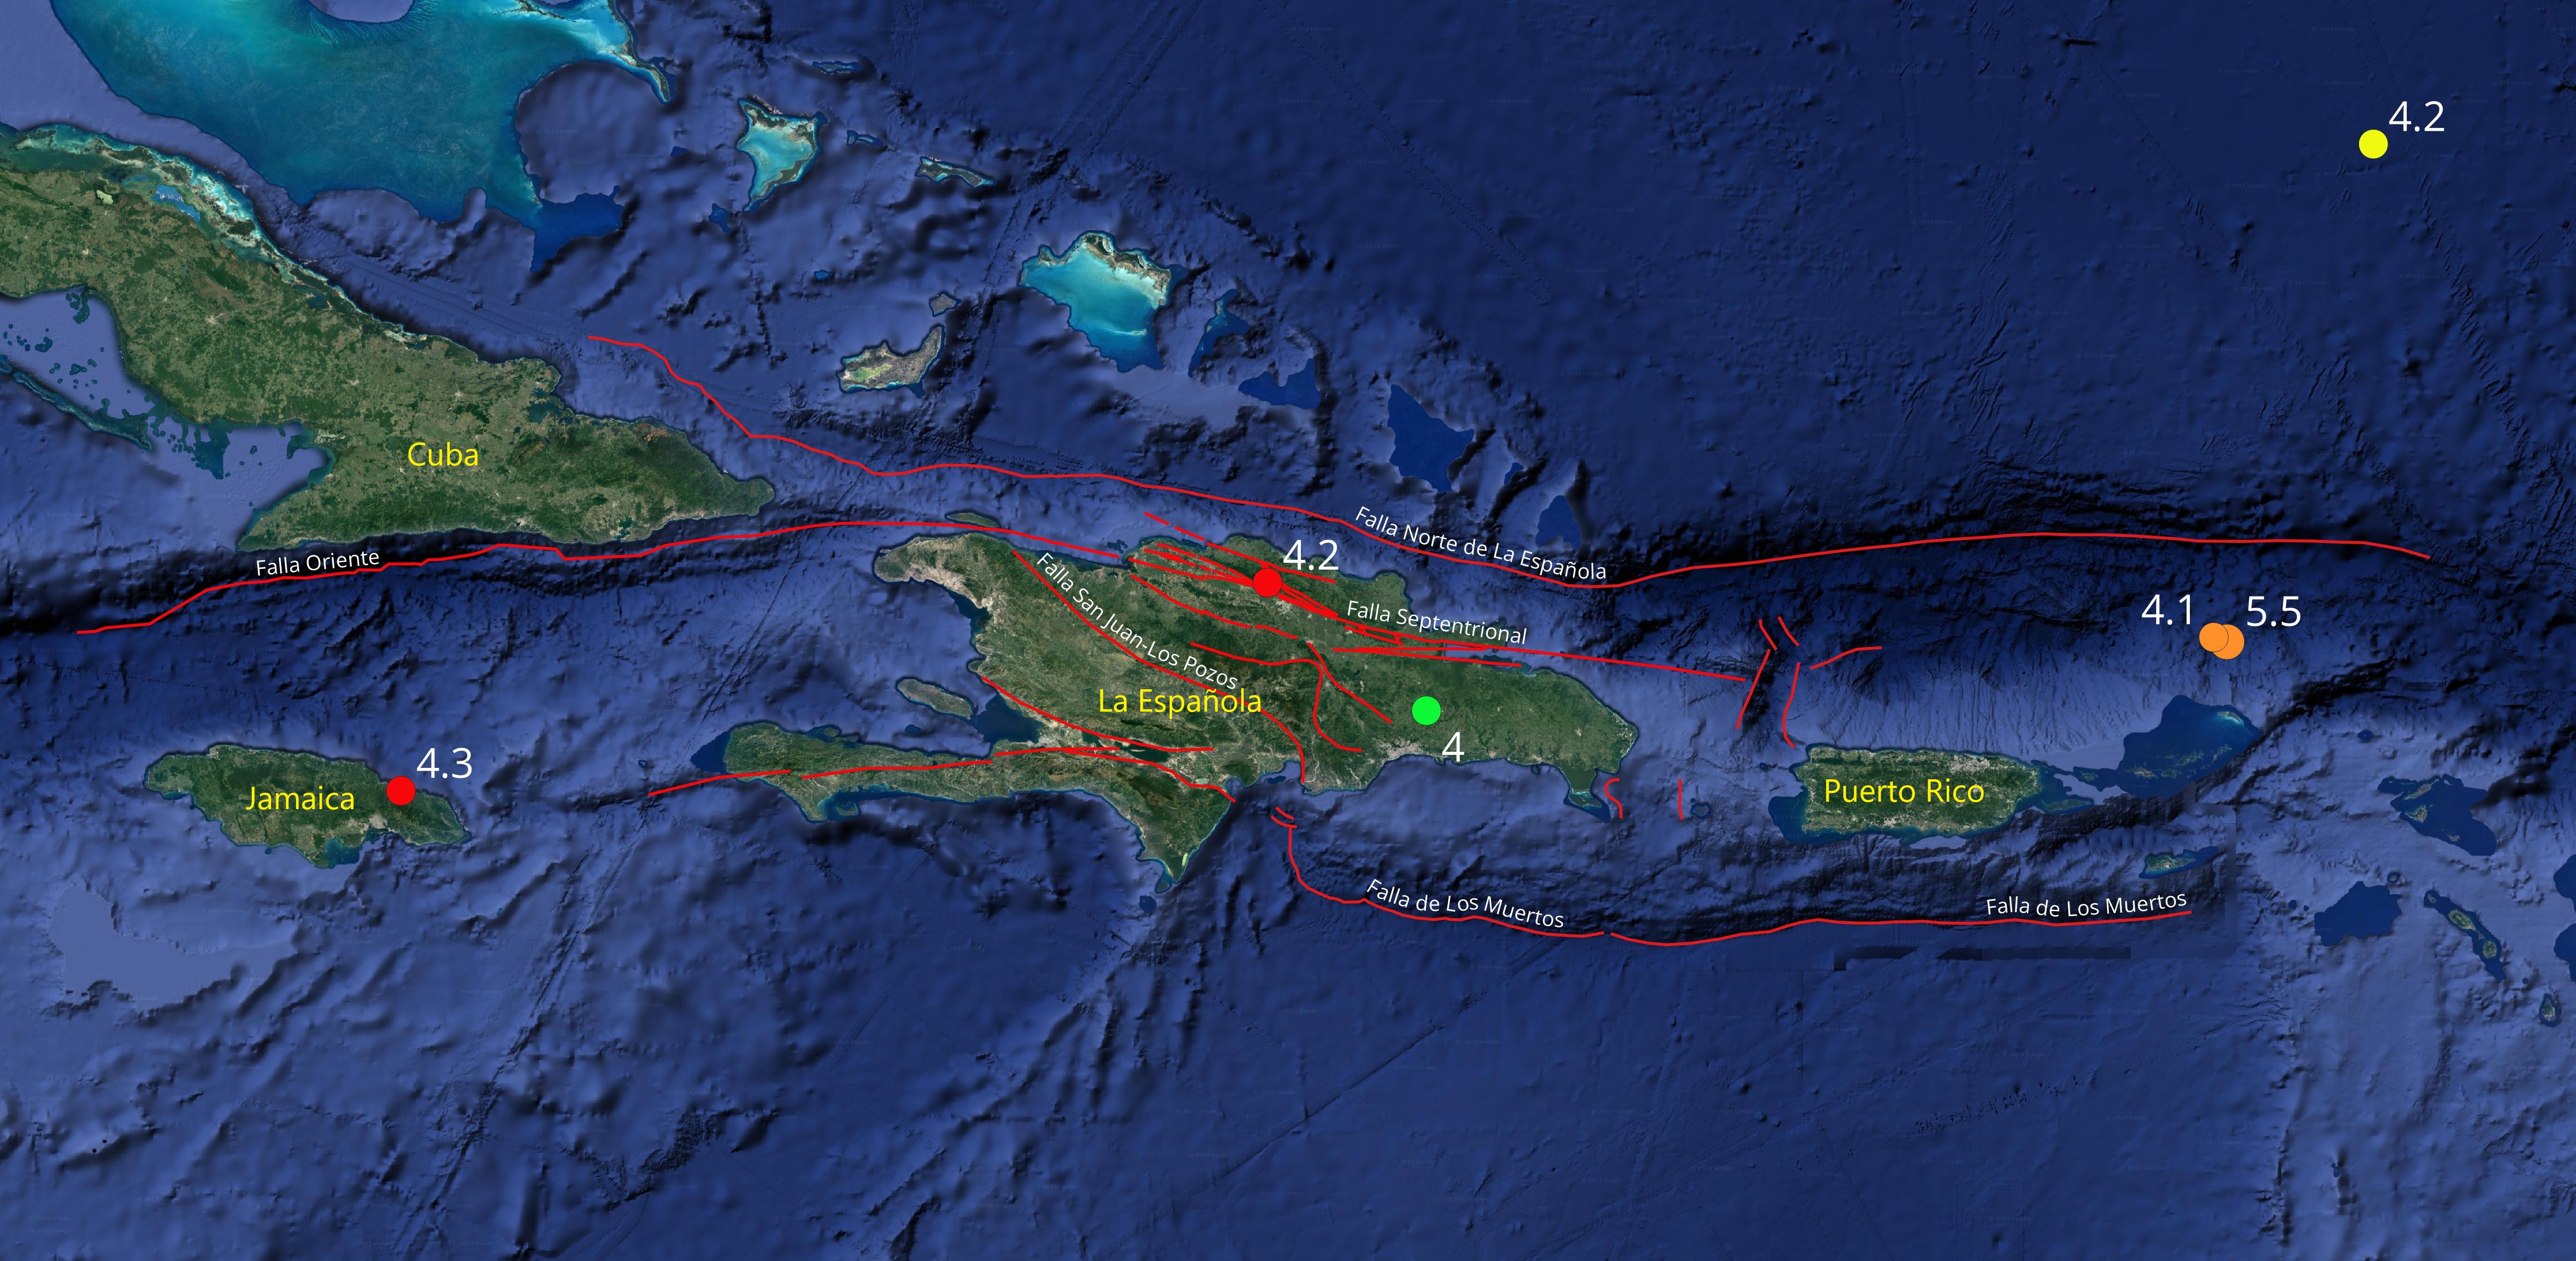 Imagen N° 2 : Mapa del Caribe nororiental mostrando los 5 eventos sísmicos con magnitudes de 4.0 y superiores durante el pasado mes de septiembre 2023